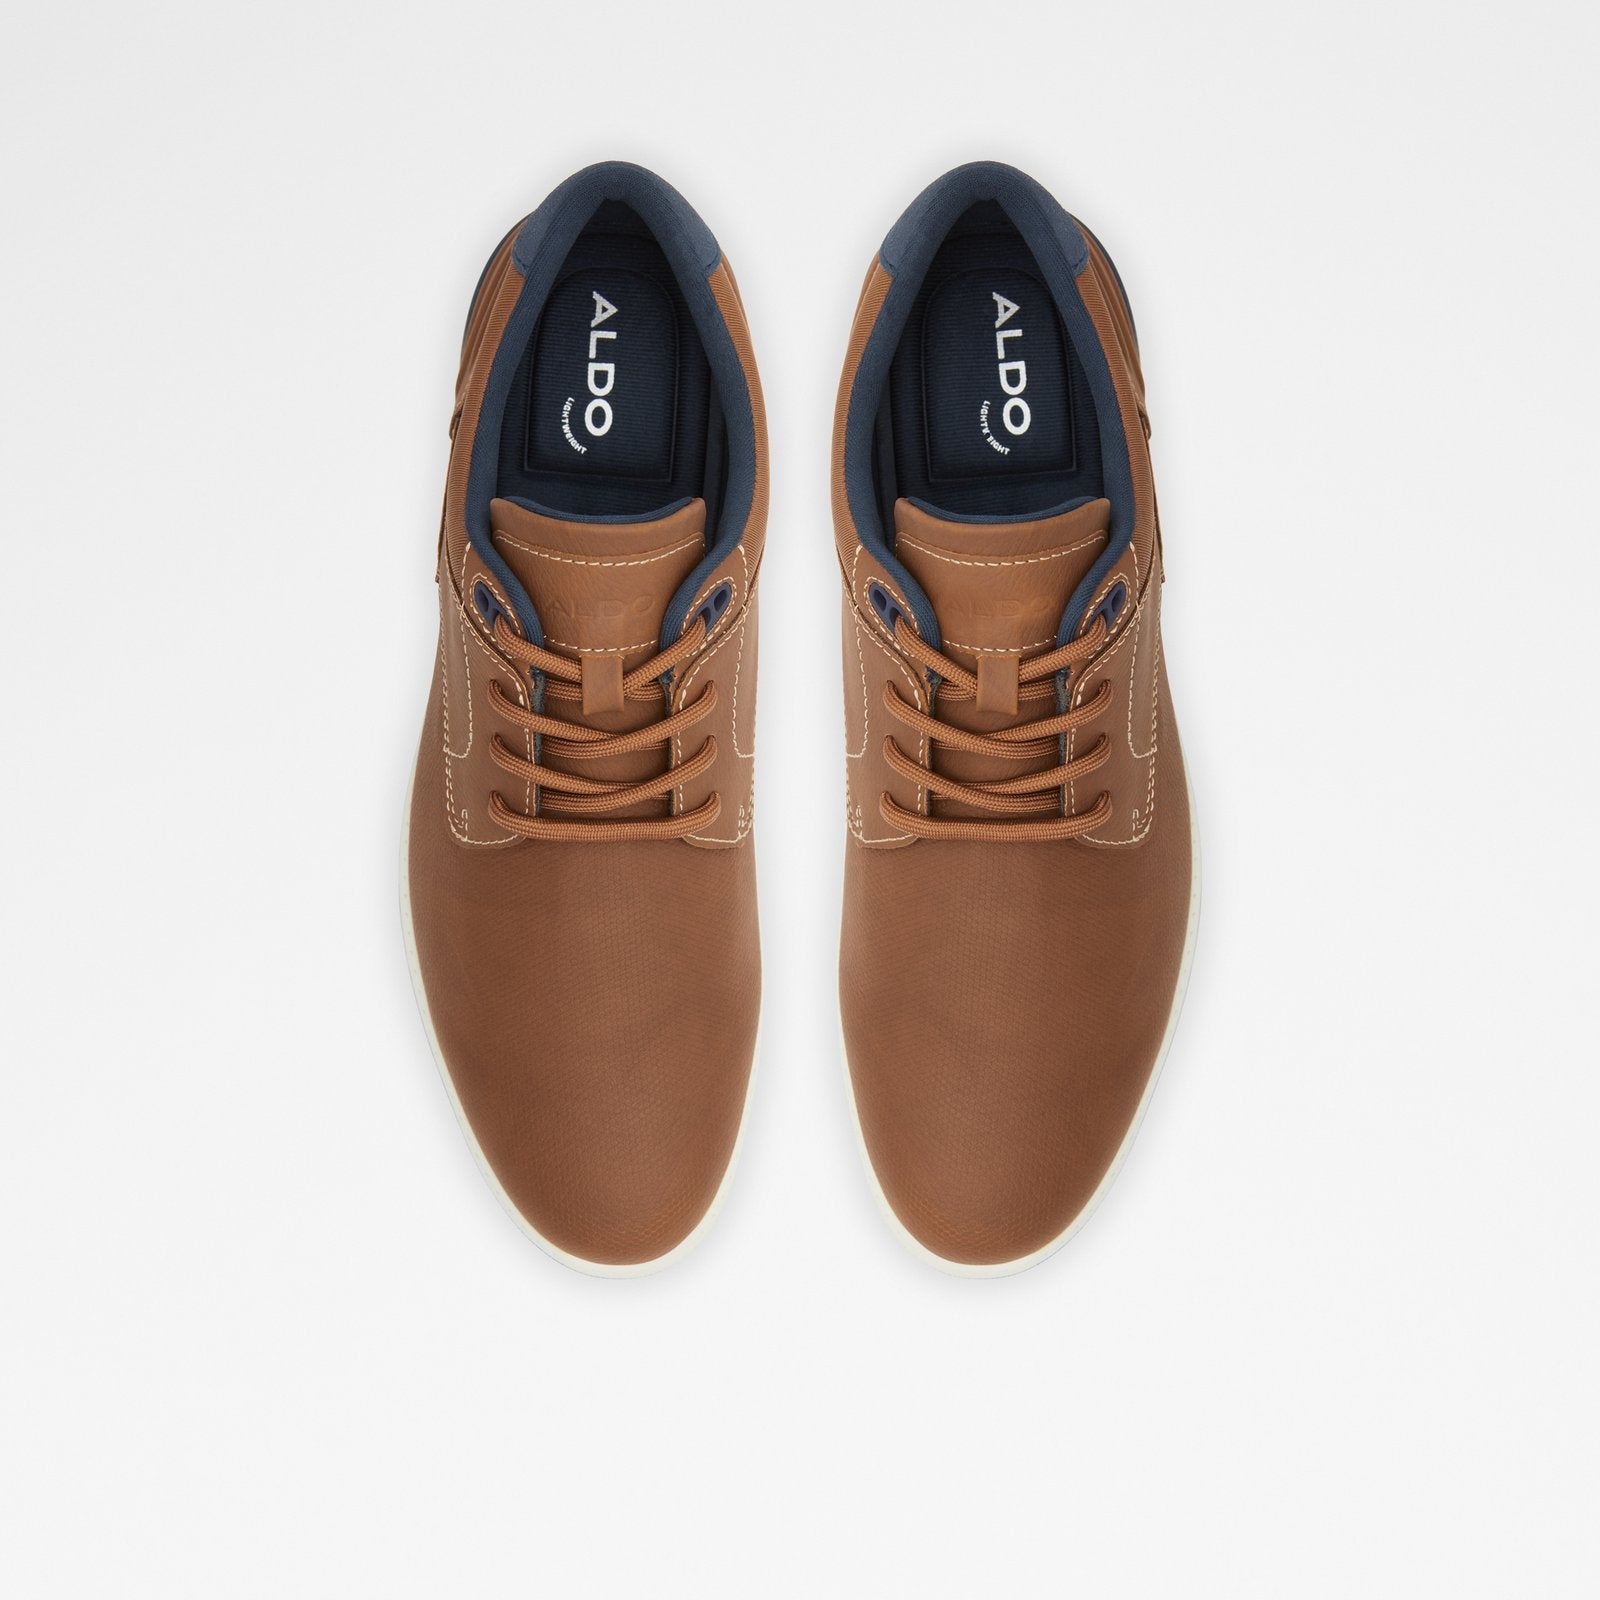 Dinbrenn / Dress Shoes Men Shoes - Cognac - ALDO KSA